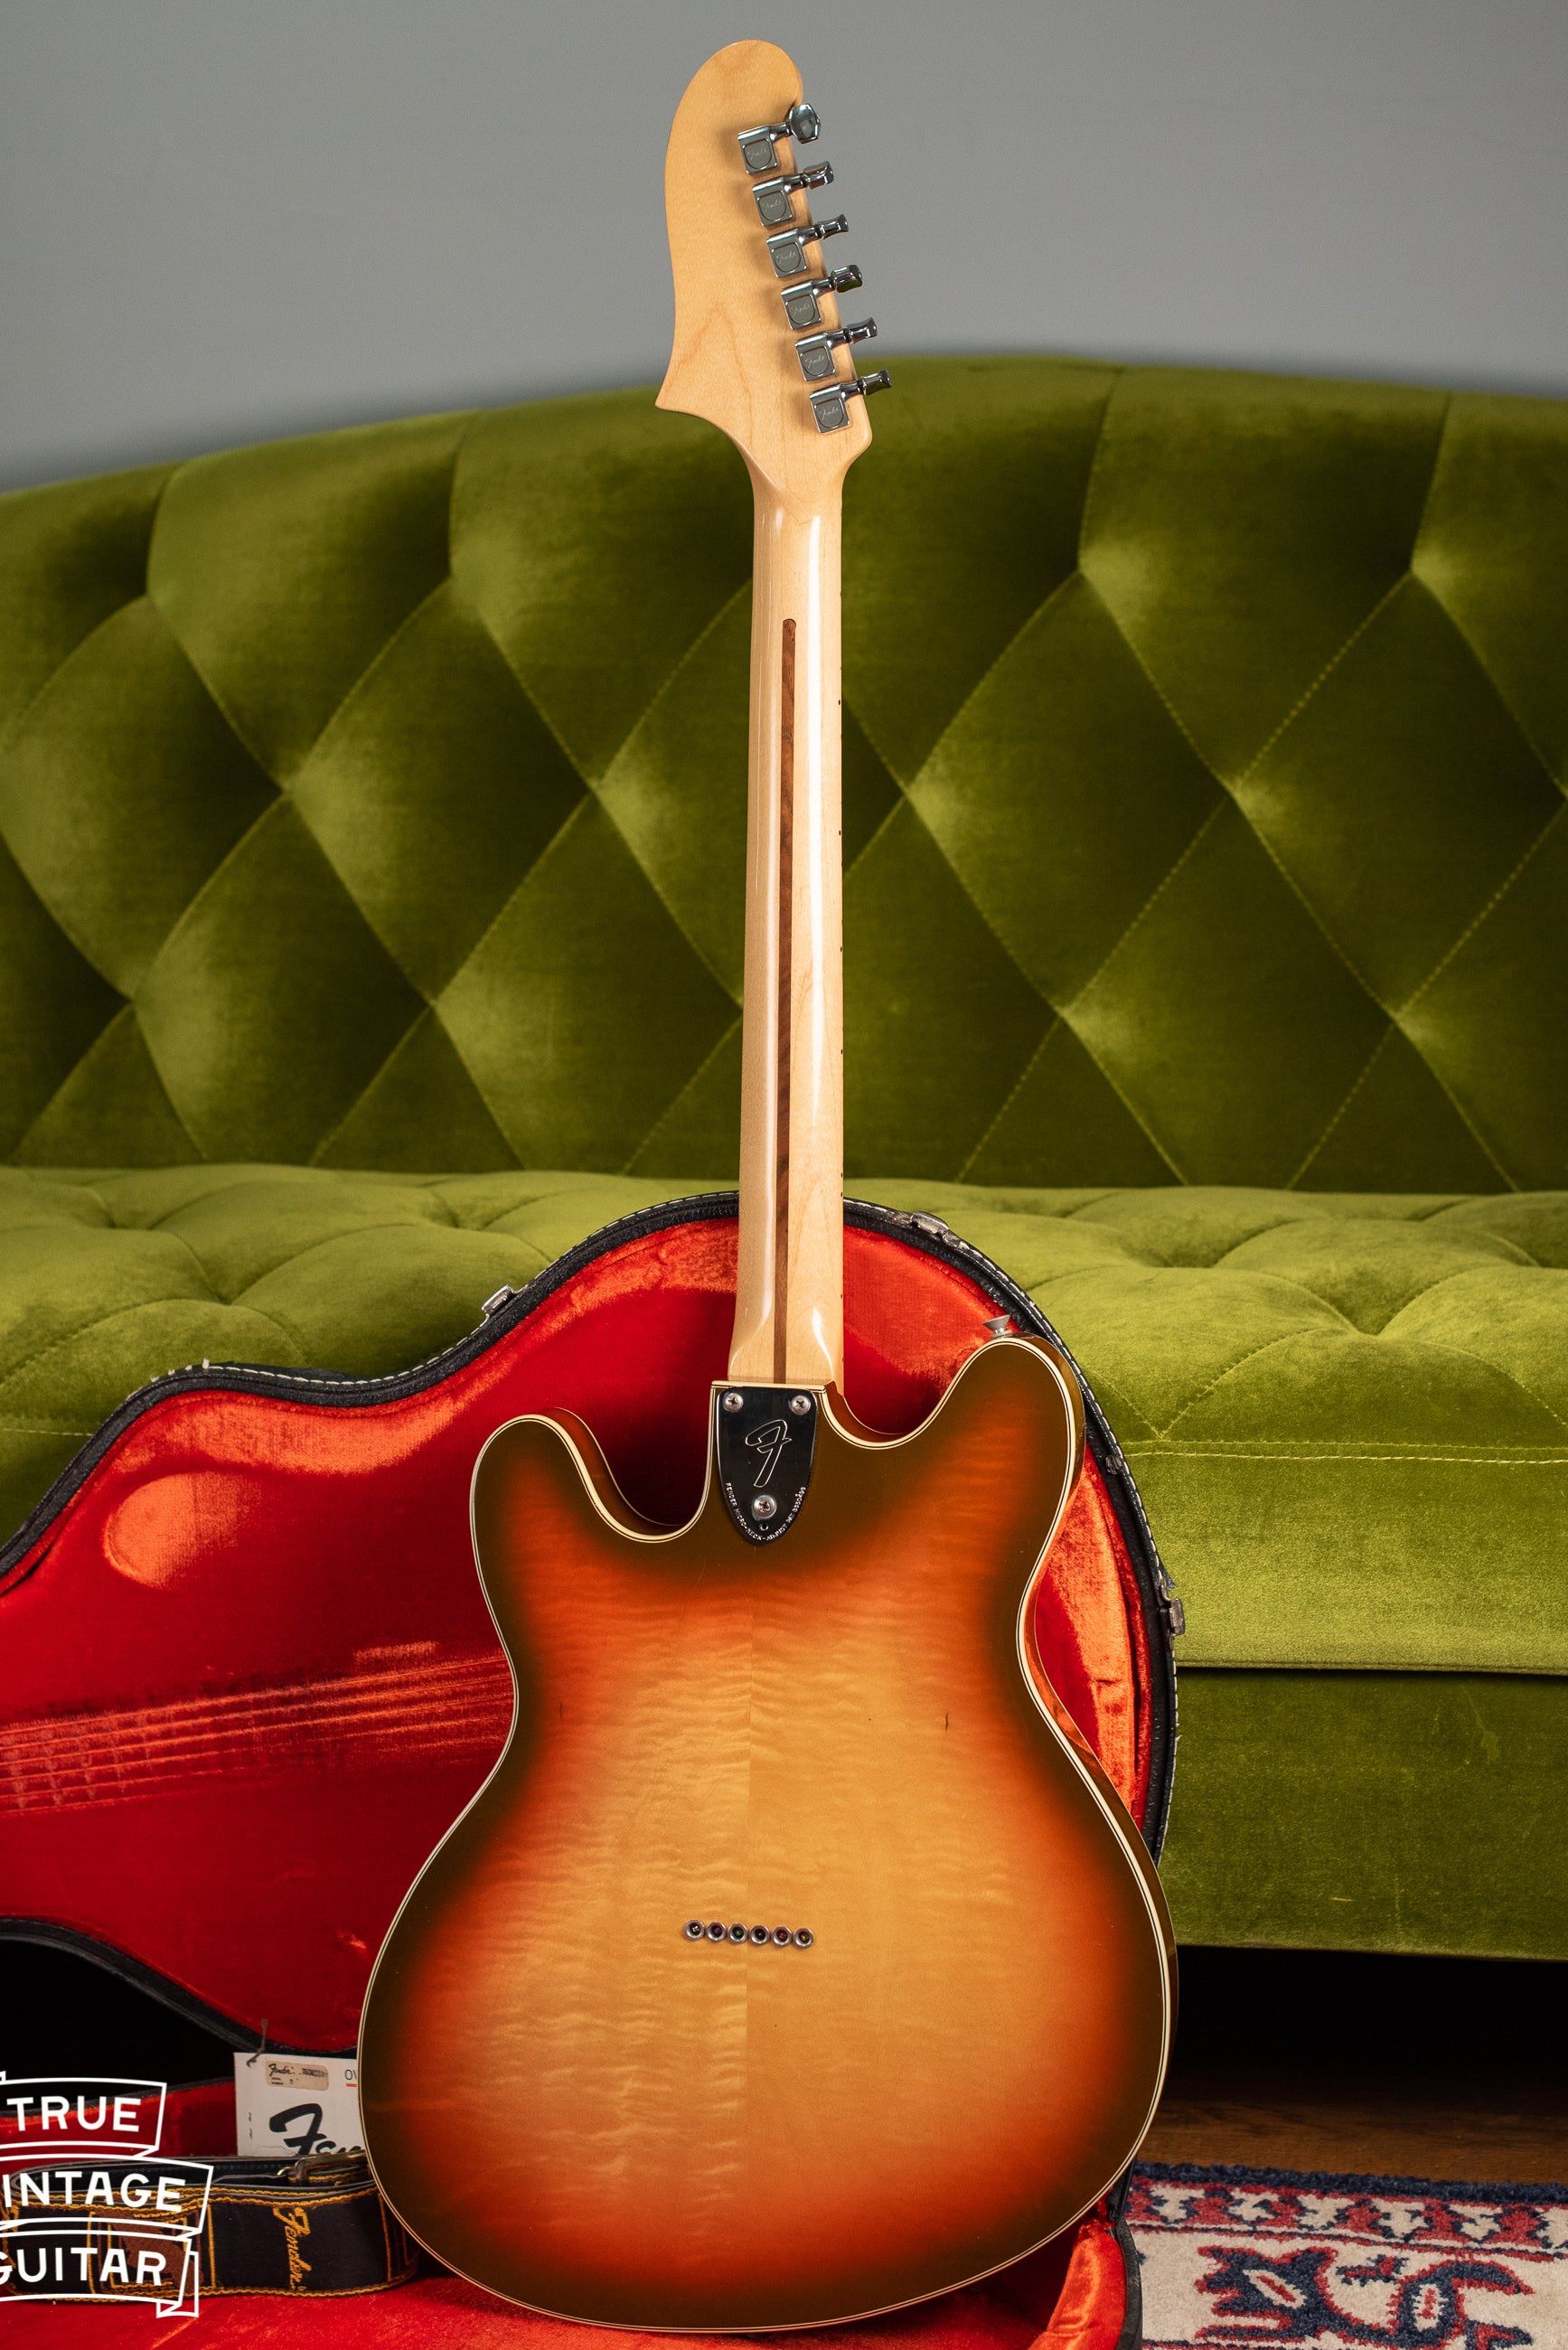 back, Vintage 1976 Fender Starcaster Sunburst guitar